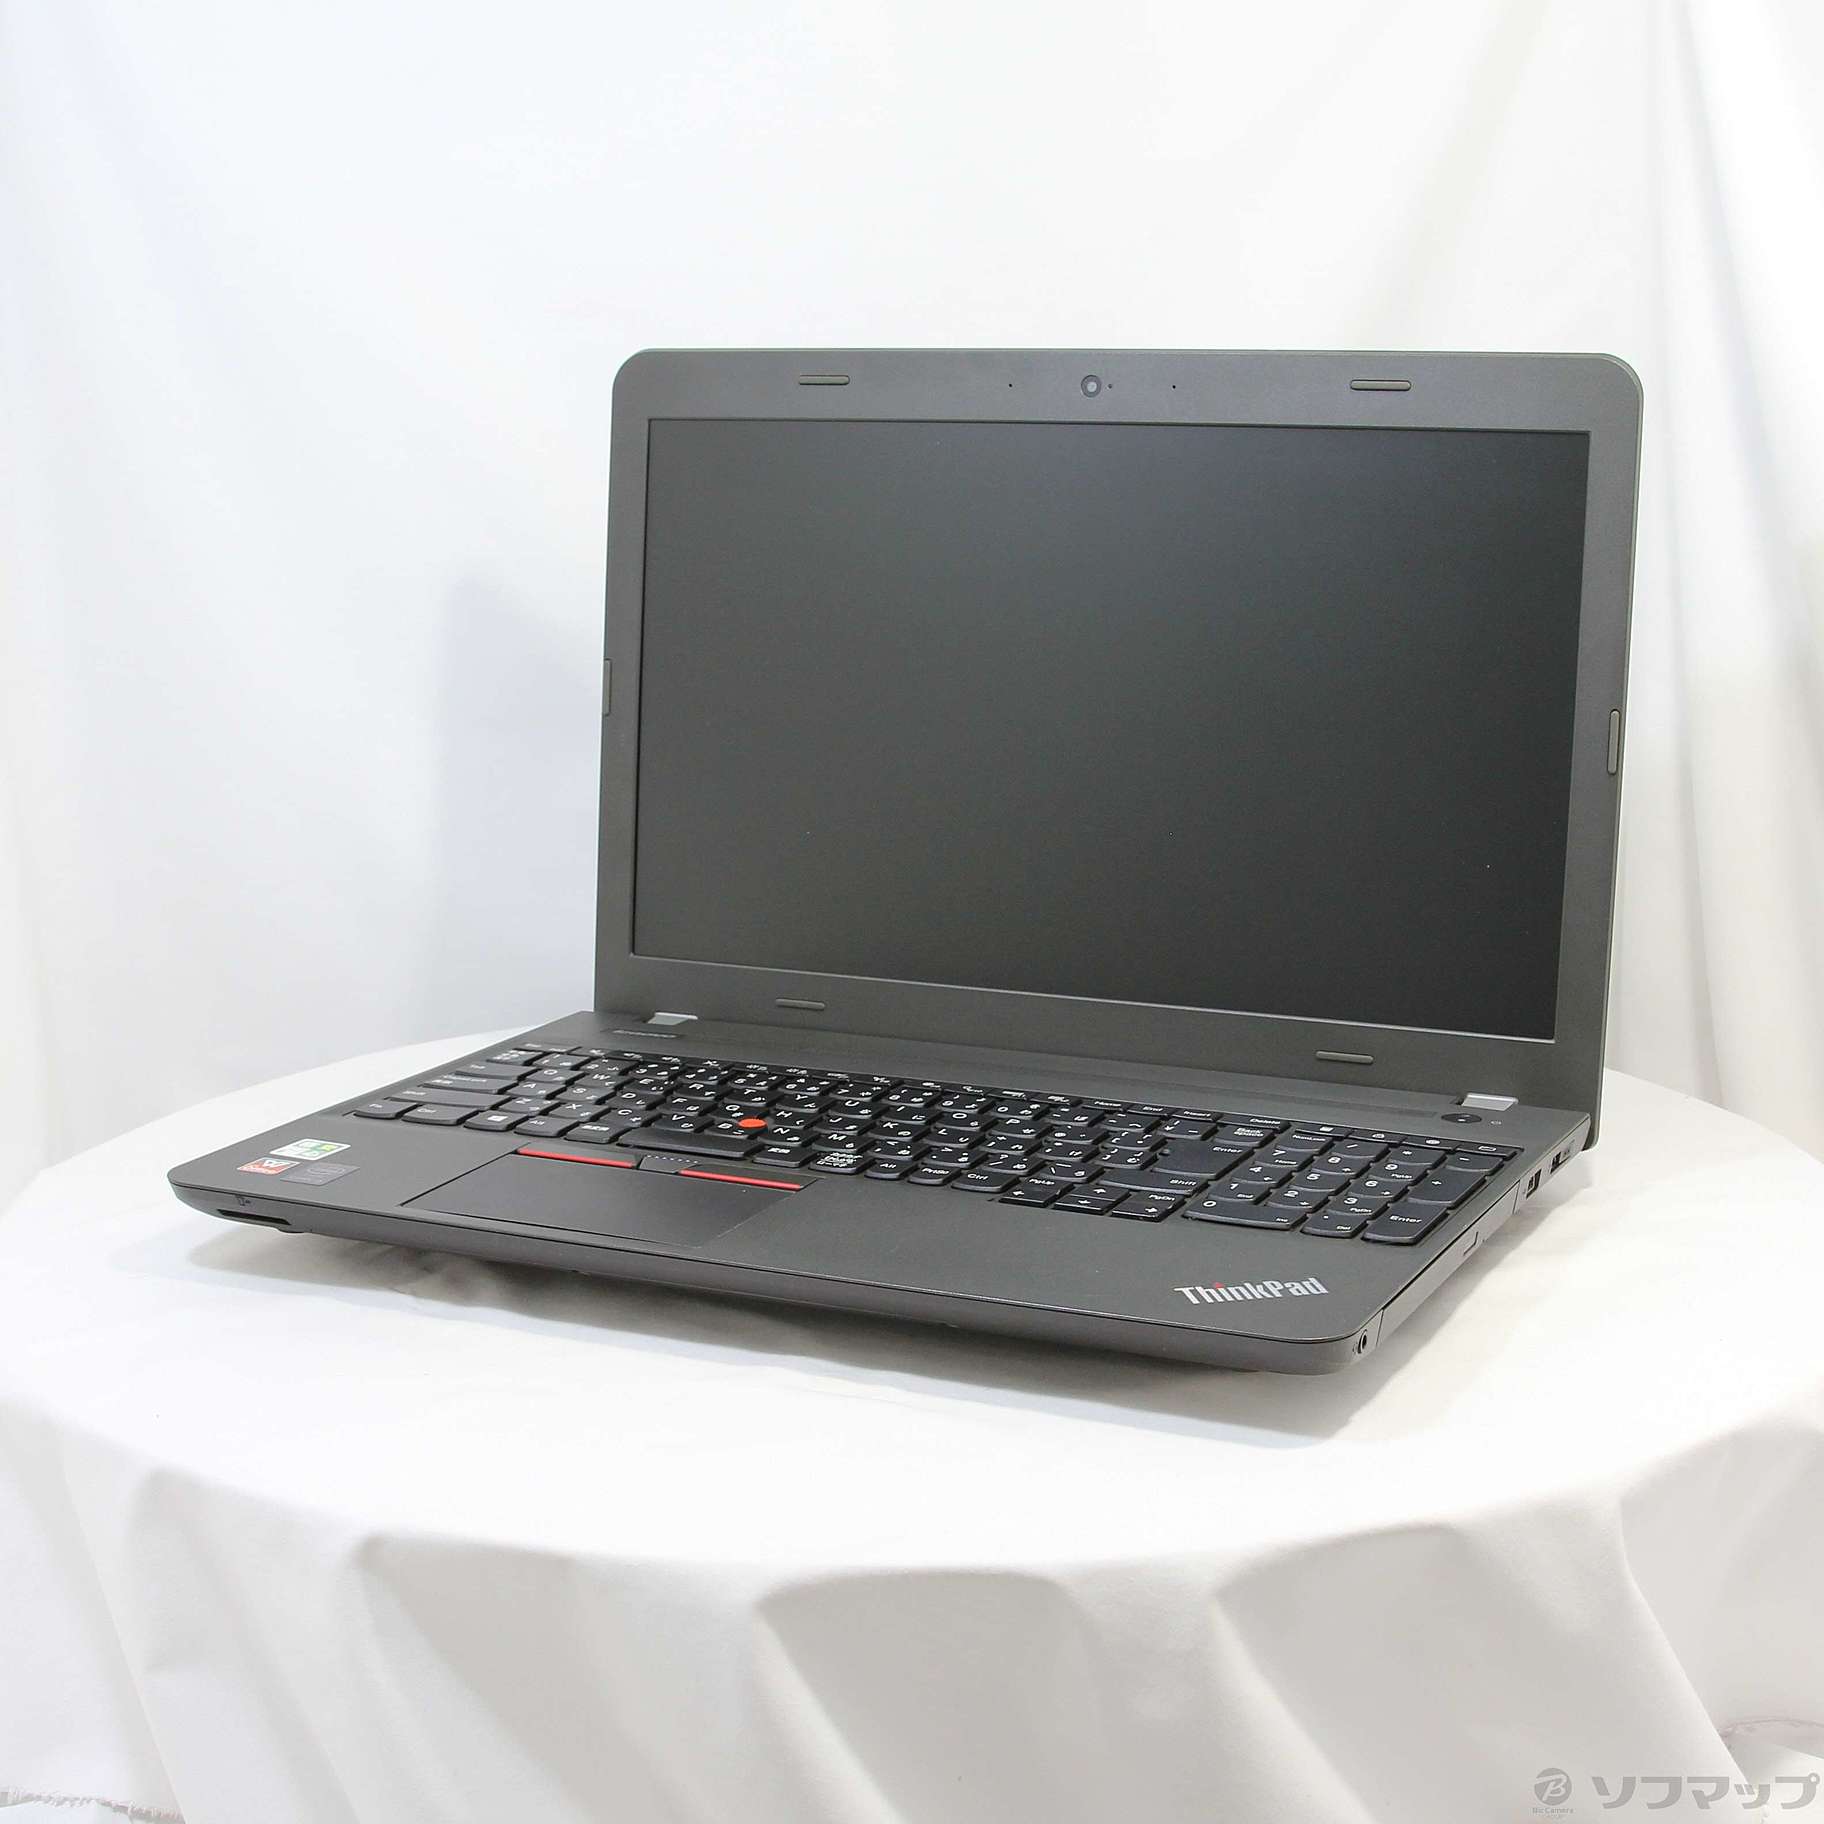 レノボ・ジャパン 20DF006DJP ThinkPad E550-www.malaikagroup.com